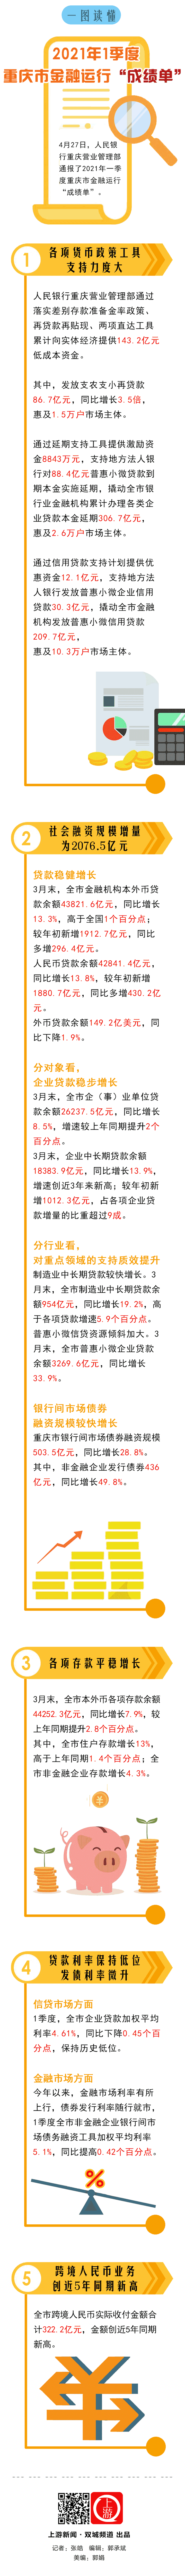 双城一图读懂-2021年1季度重庆市金融运行成绩单20210427.gif